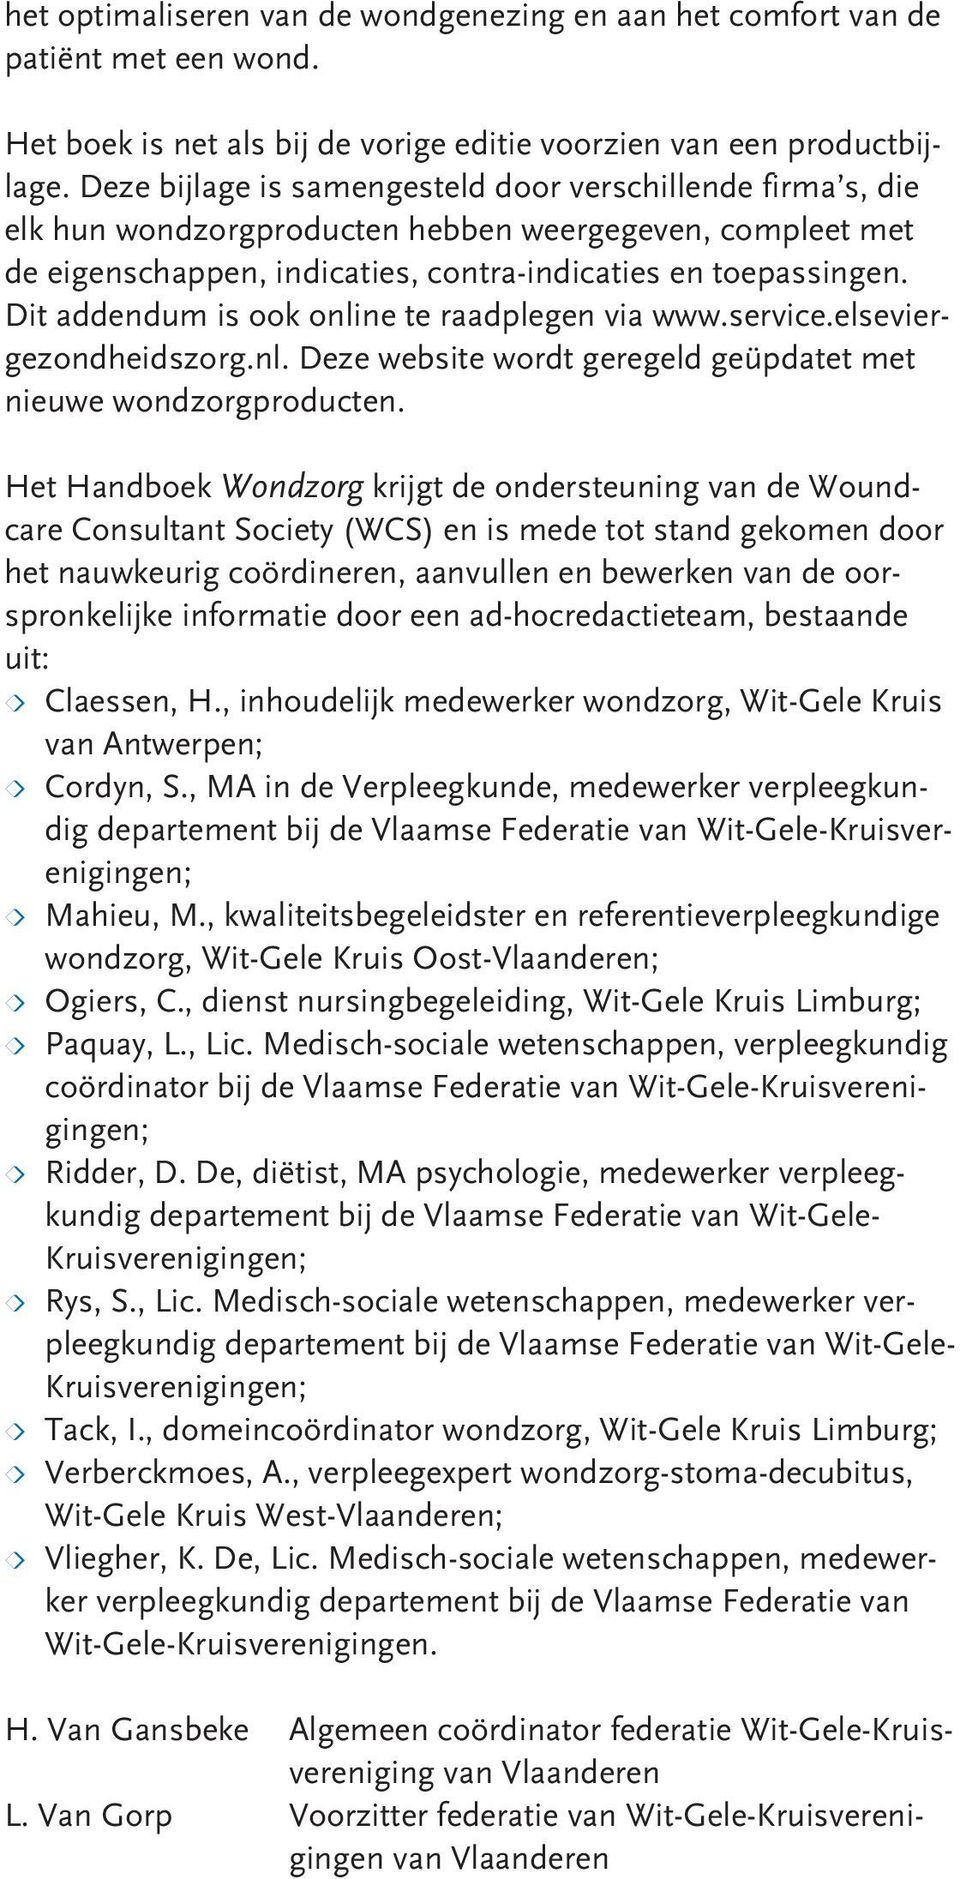 Dit addendum is ook online te raadplegen via www.service.elseviergezondheidszorg.nl. Deze website wordt geregeld geüpdatet met nieuwe wondzorgproducten.